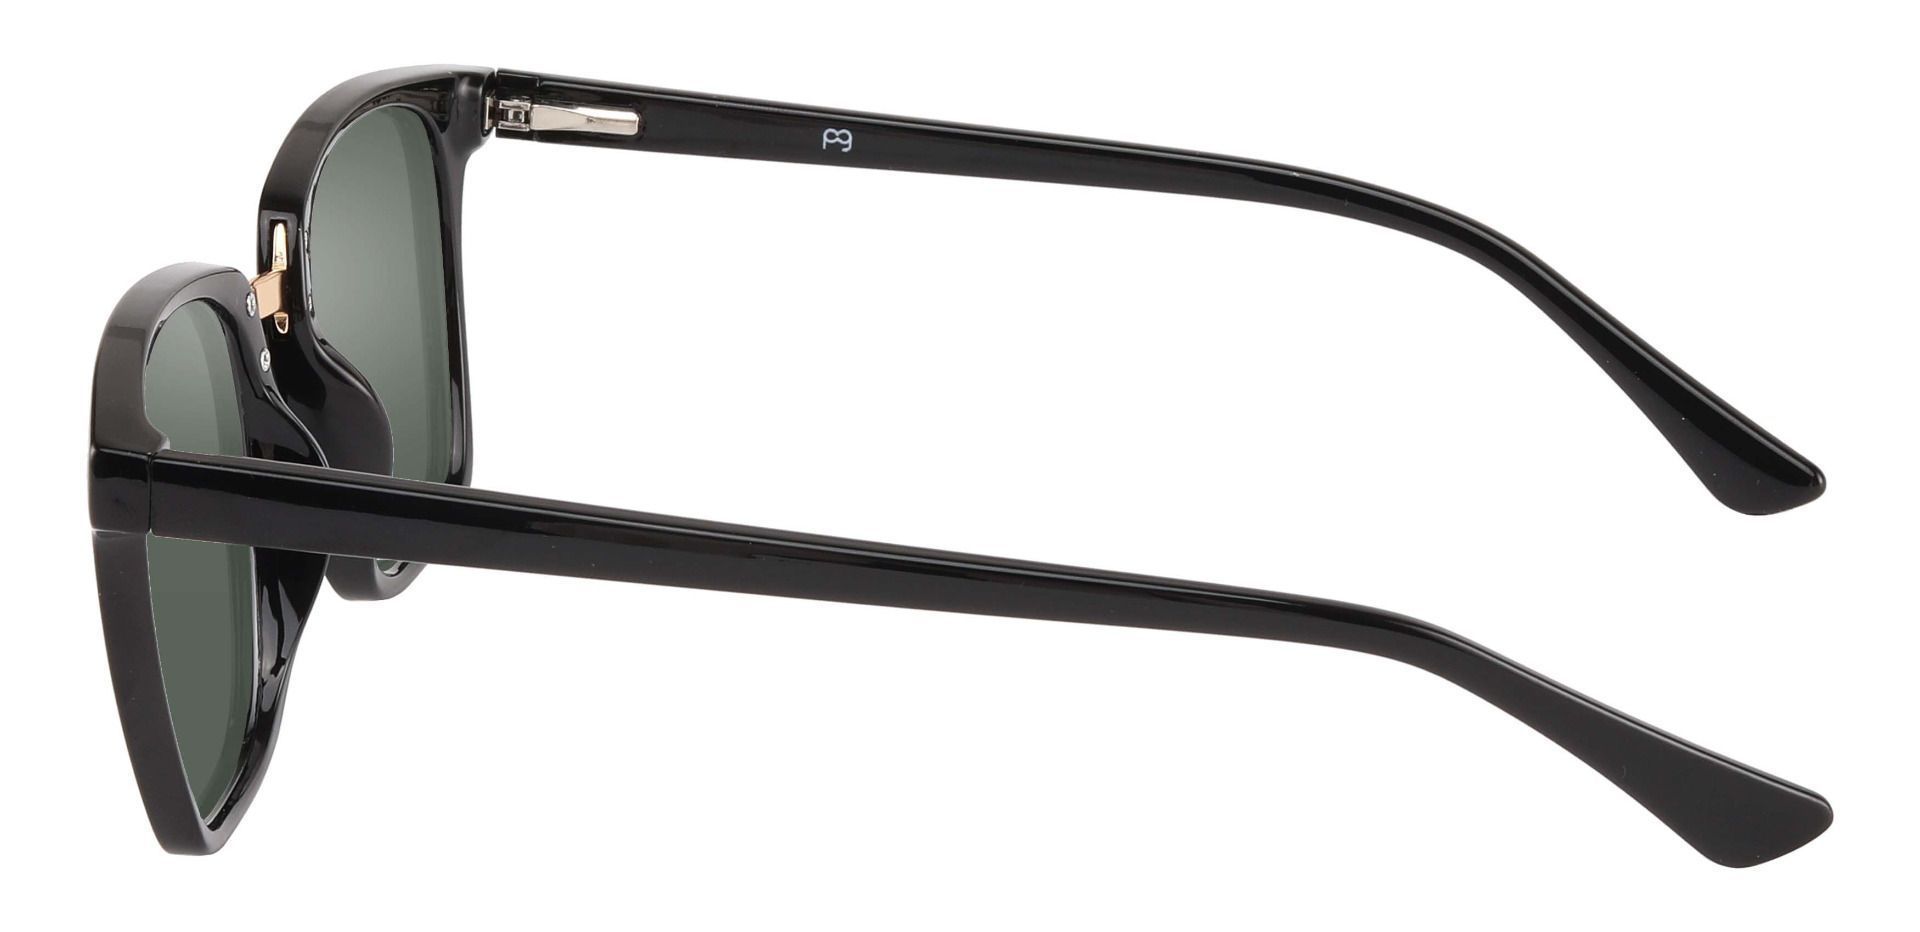 Delta Square Non-Rx Sunglasses - Black Frame With Green Lenses